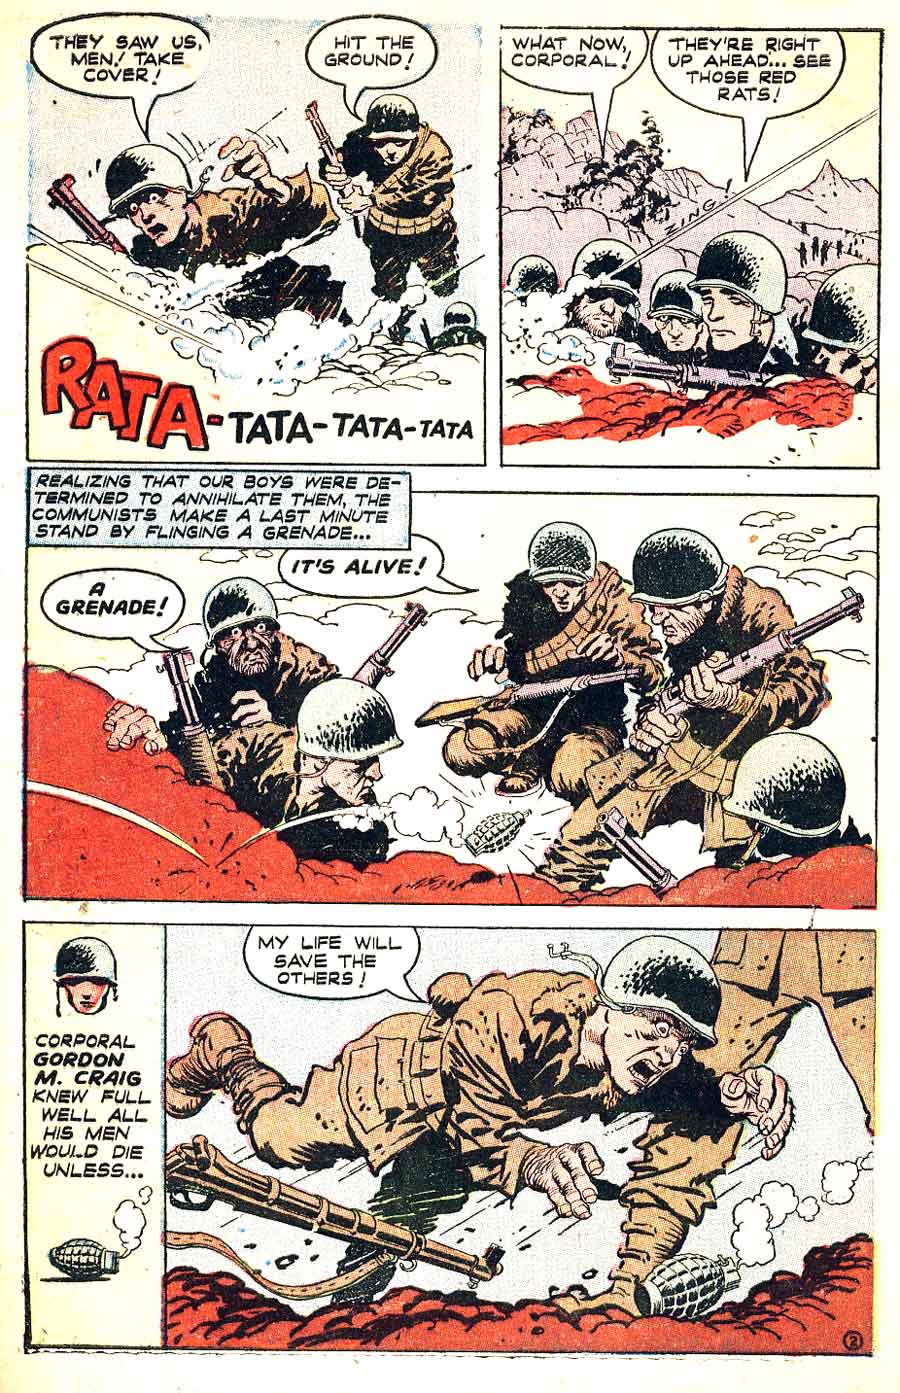 Heroic Comics #69 golden age 1950s war comic book page art by Frank Frazetta